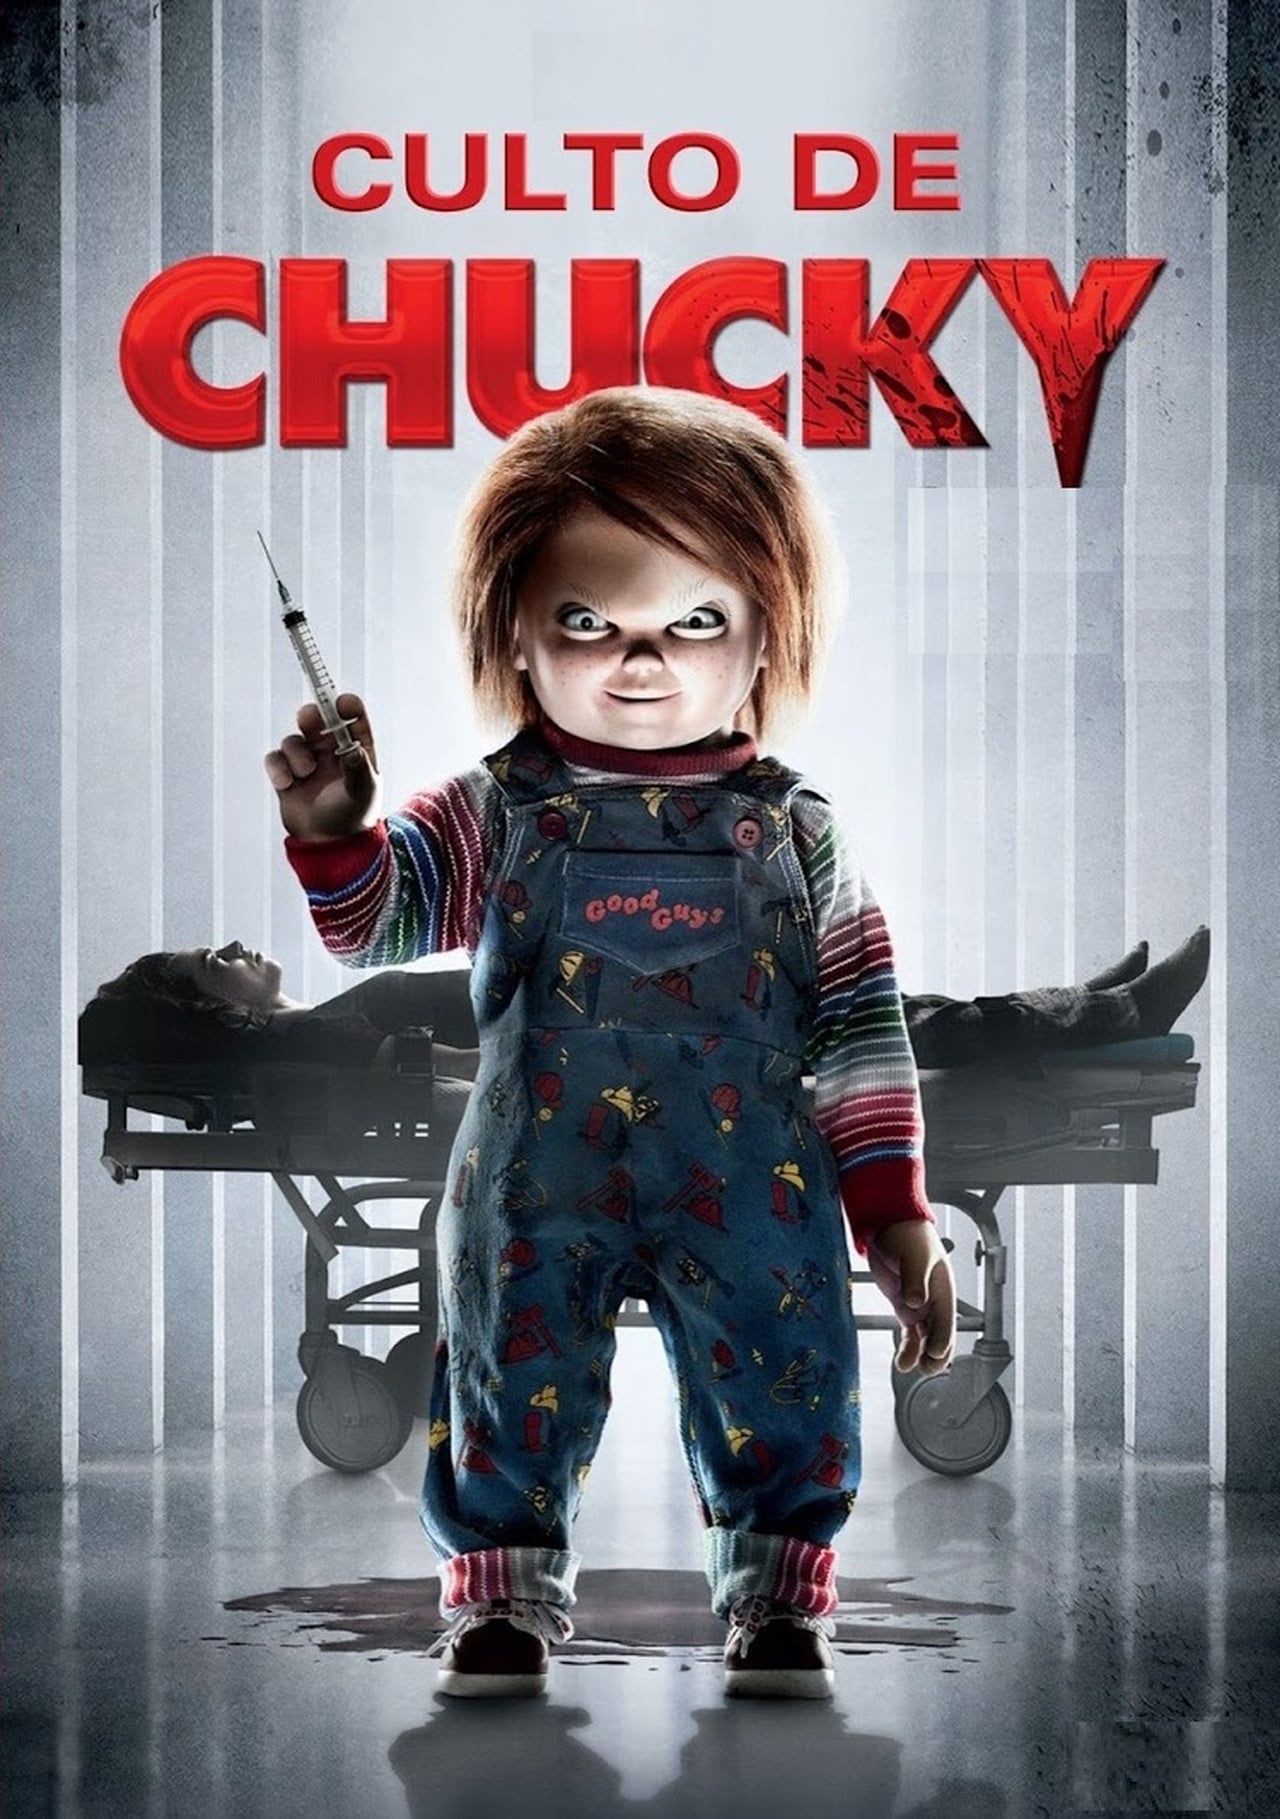 El Culto de Chucky